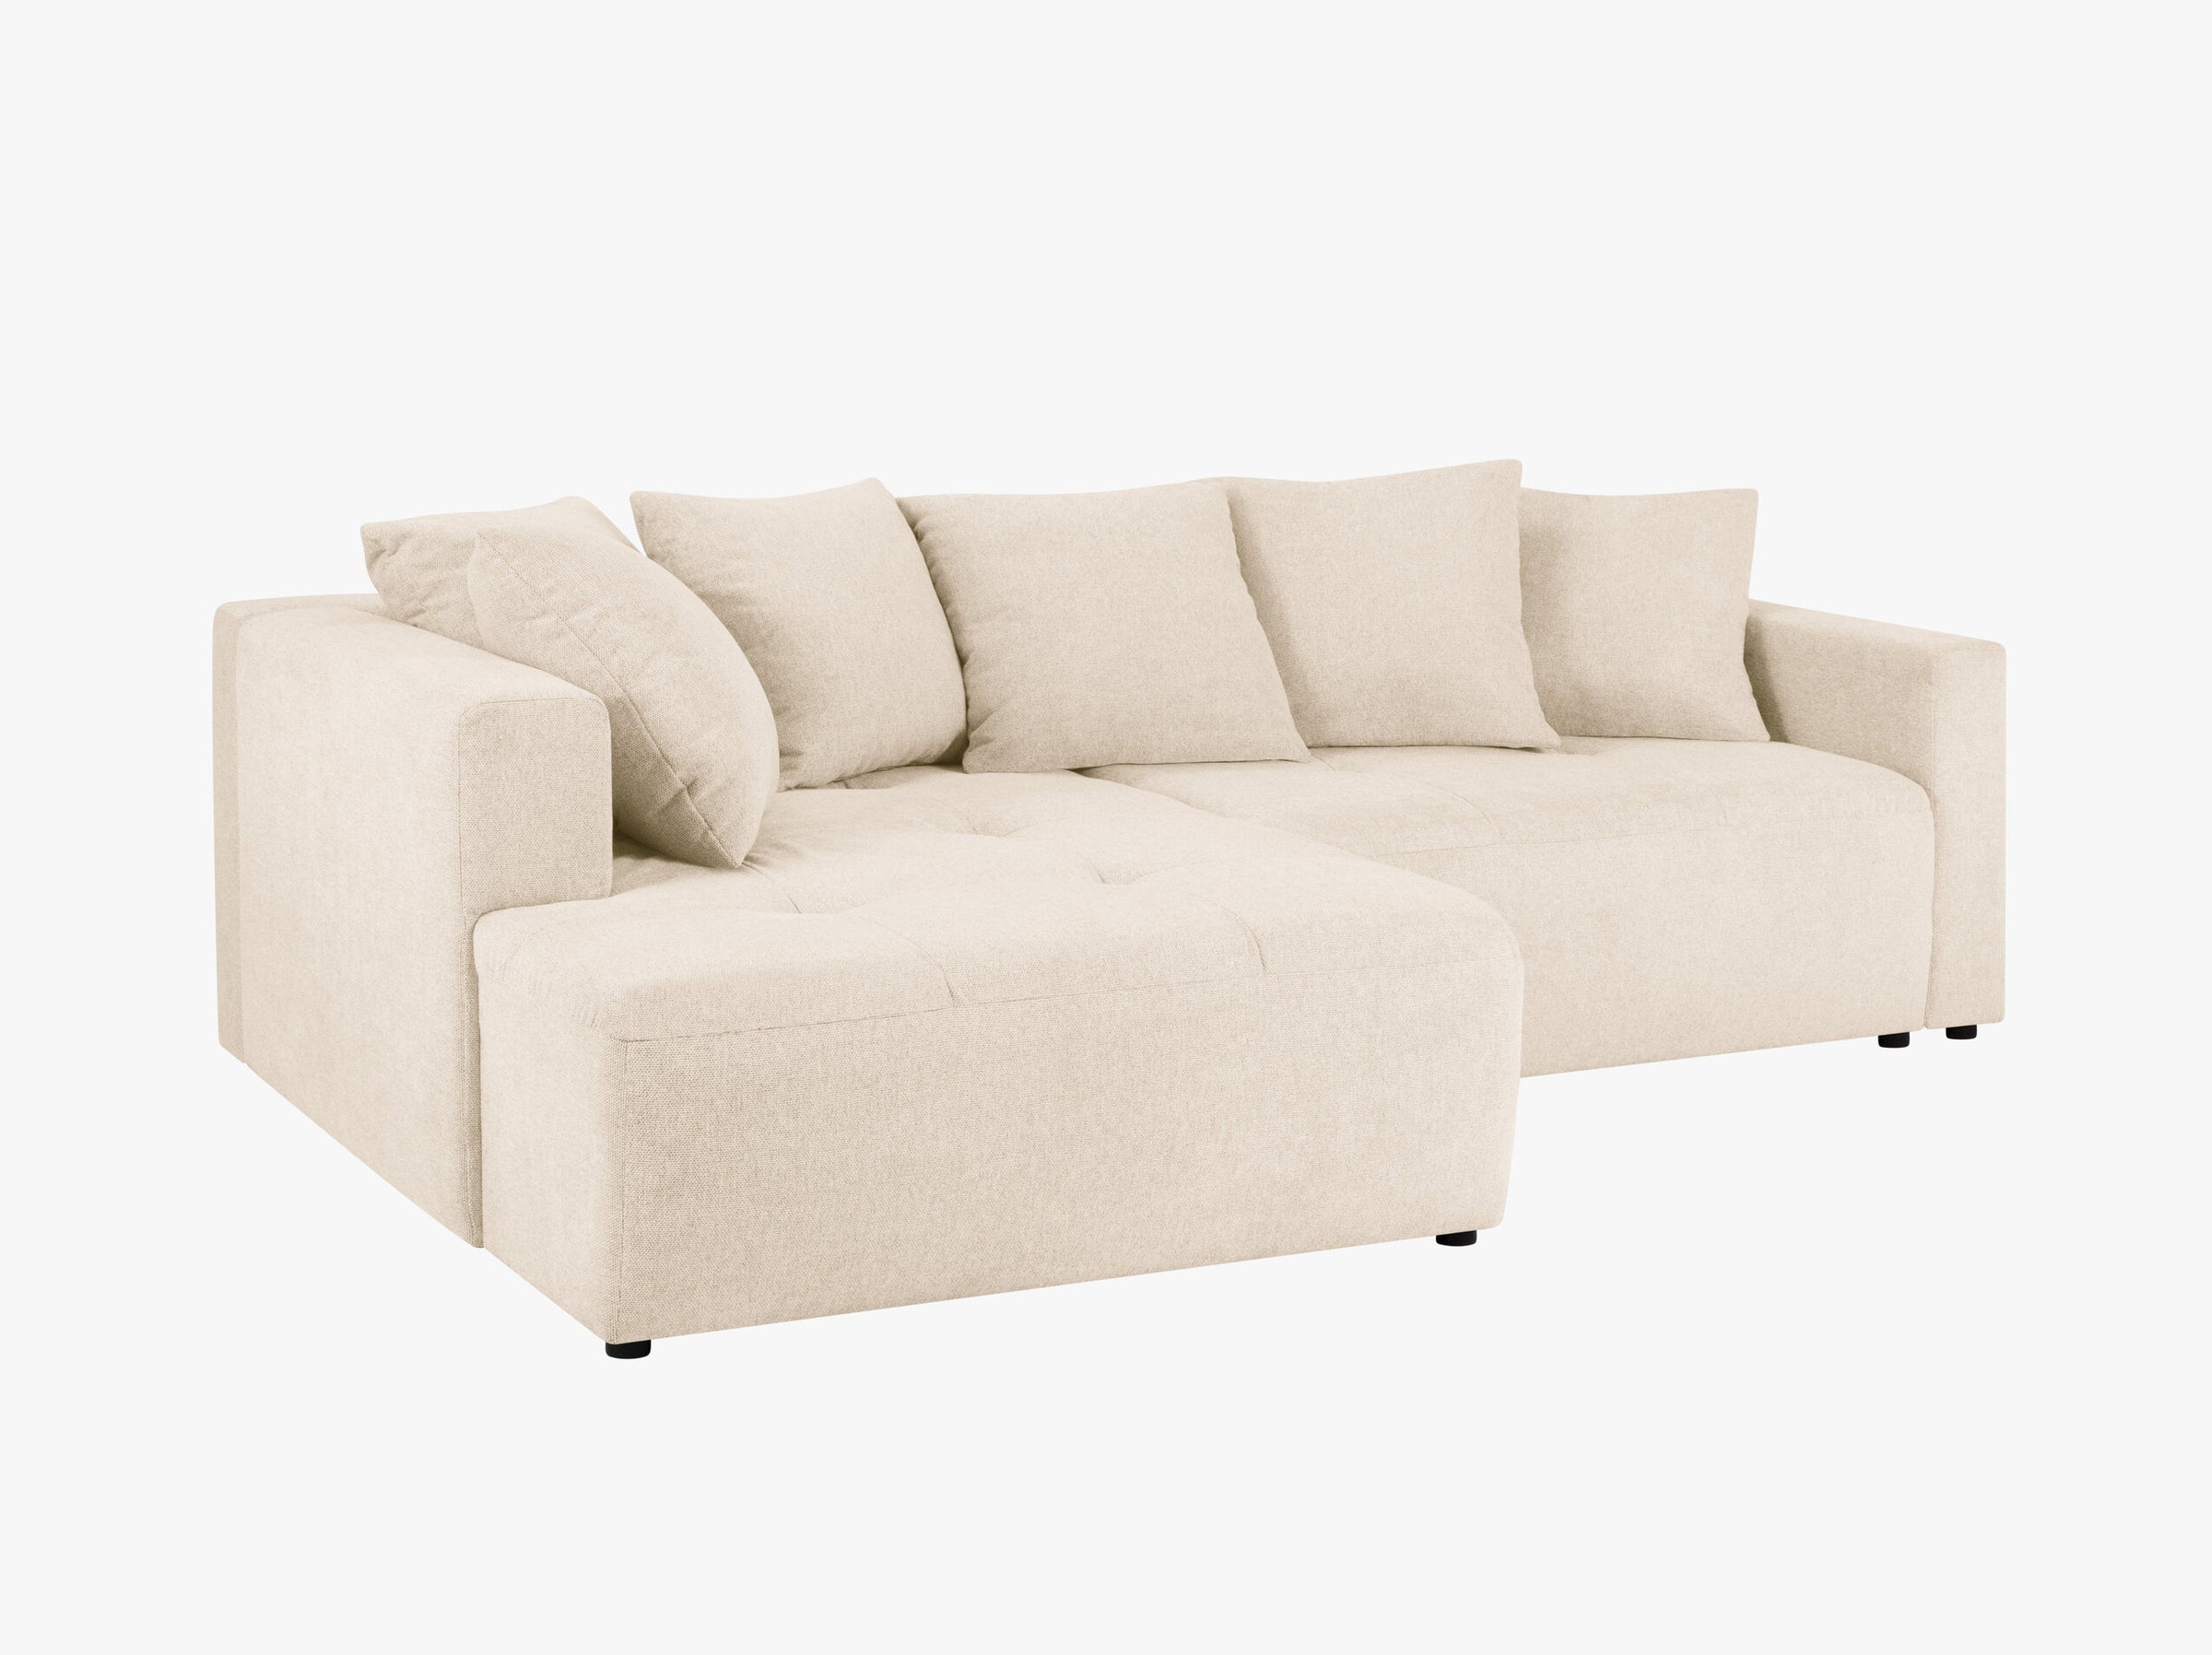 Elie sofas structured fabric beige